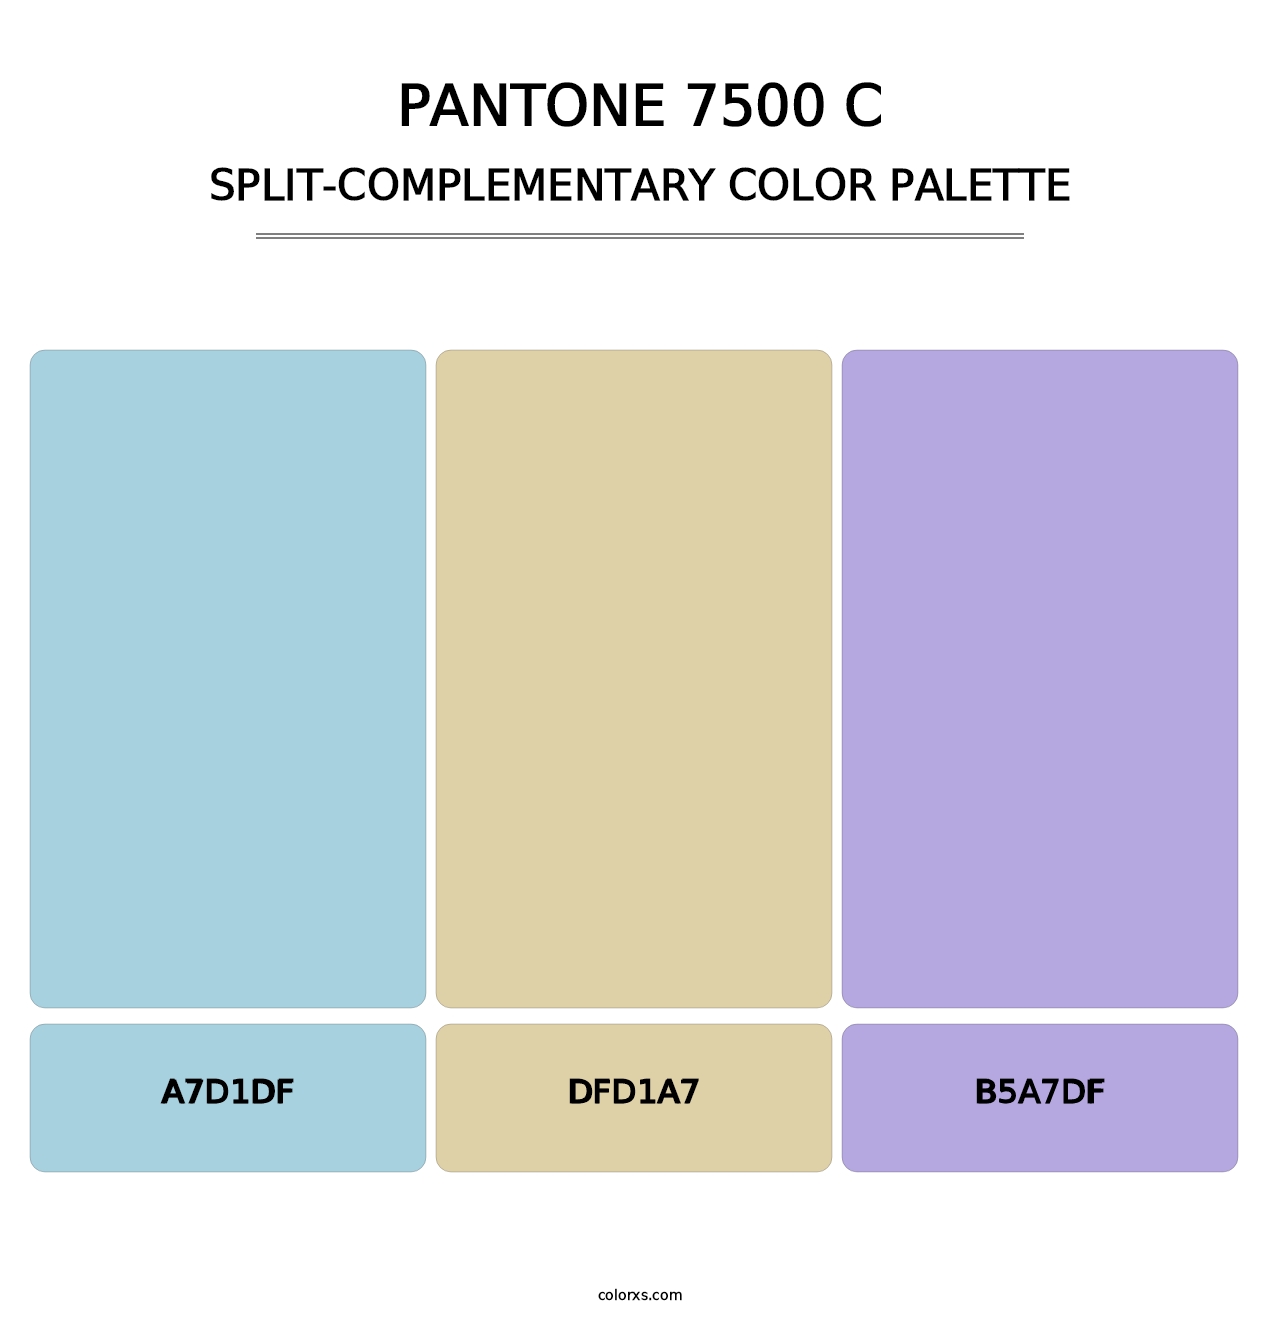 PANTONE 7500 C - Split-Complementary Color Palette